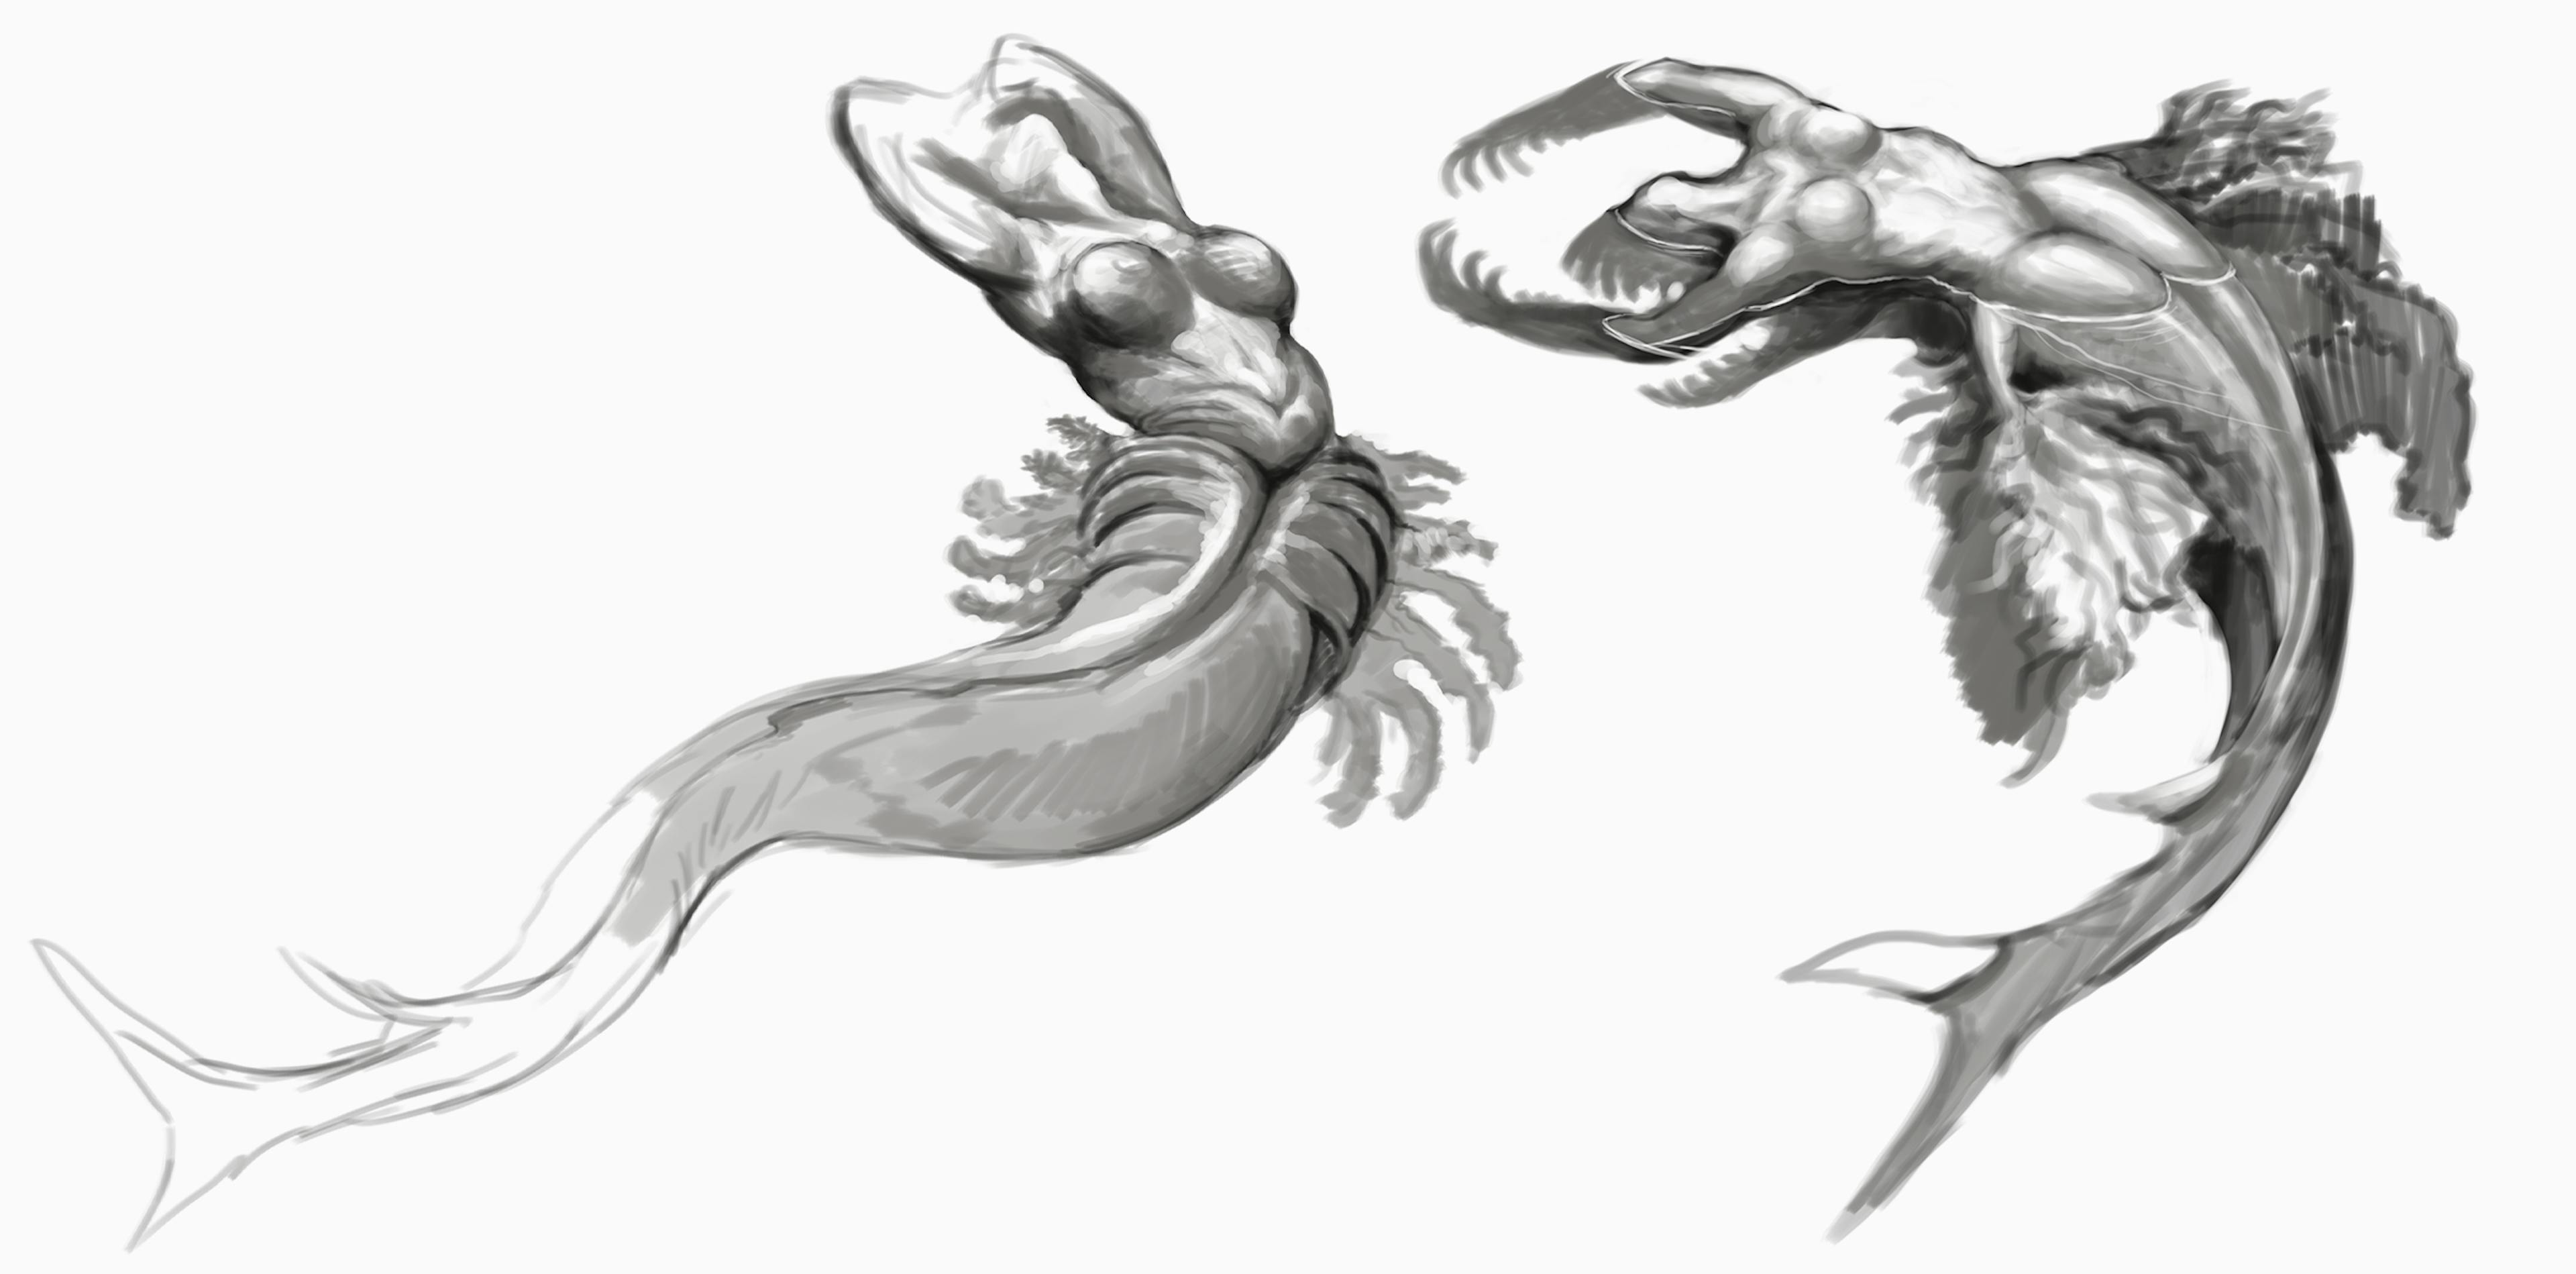 Sketches of mermaids